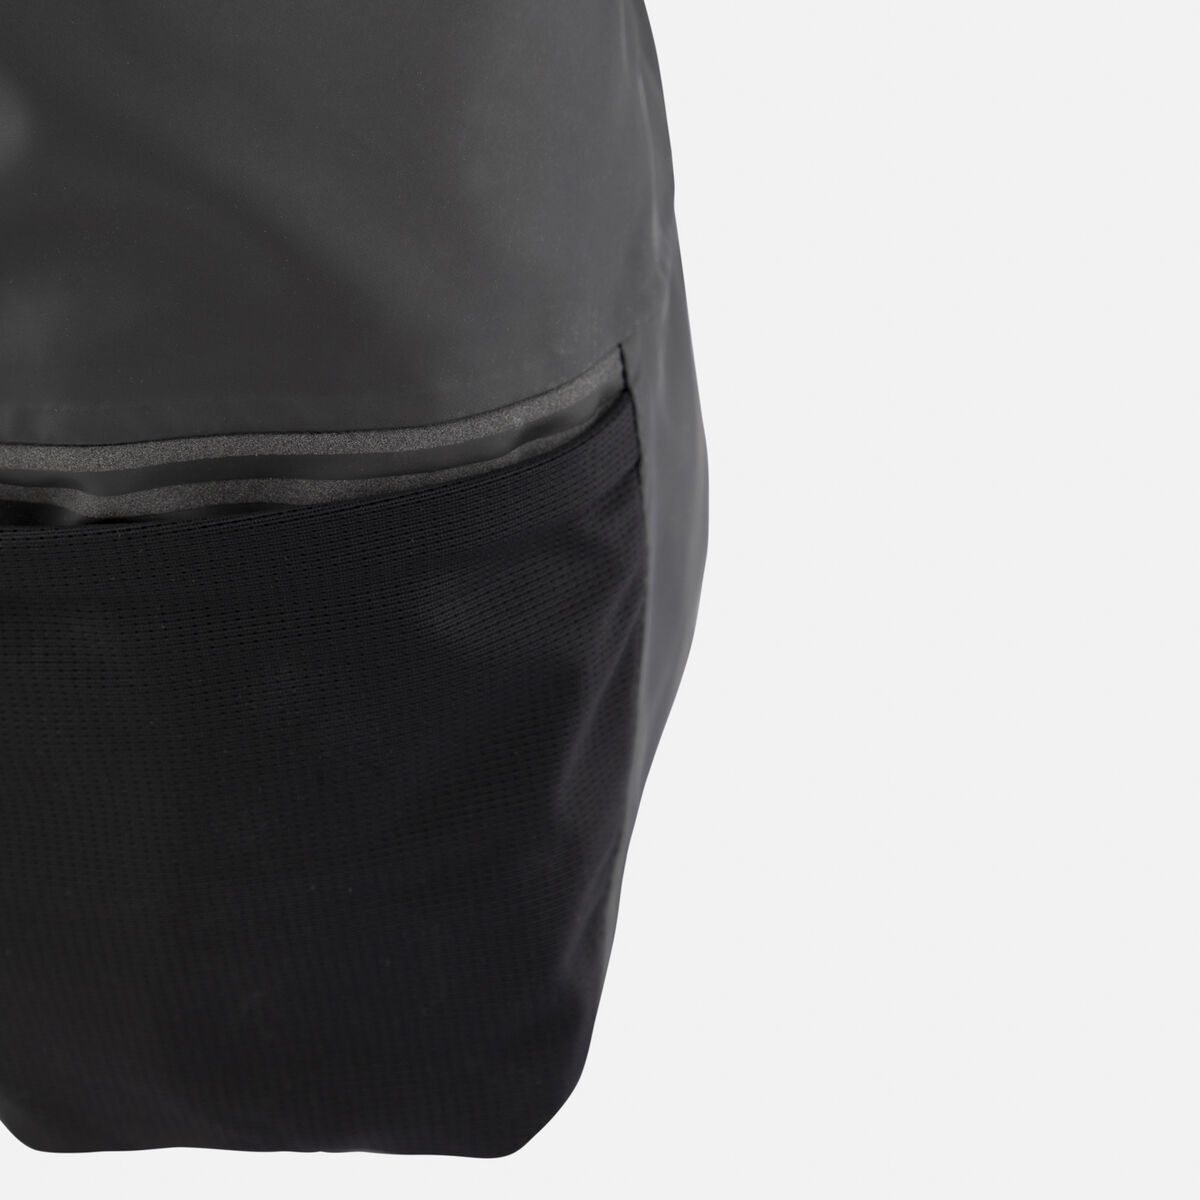 Rossignol Unisex 15L black waterproof Commuters backpack black